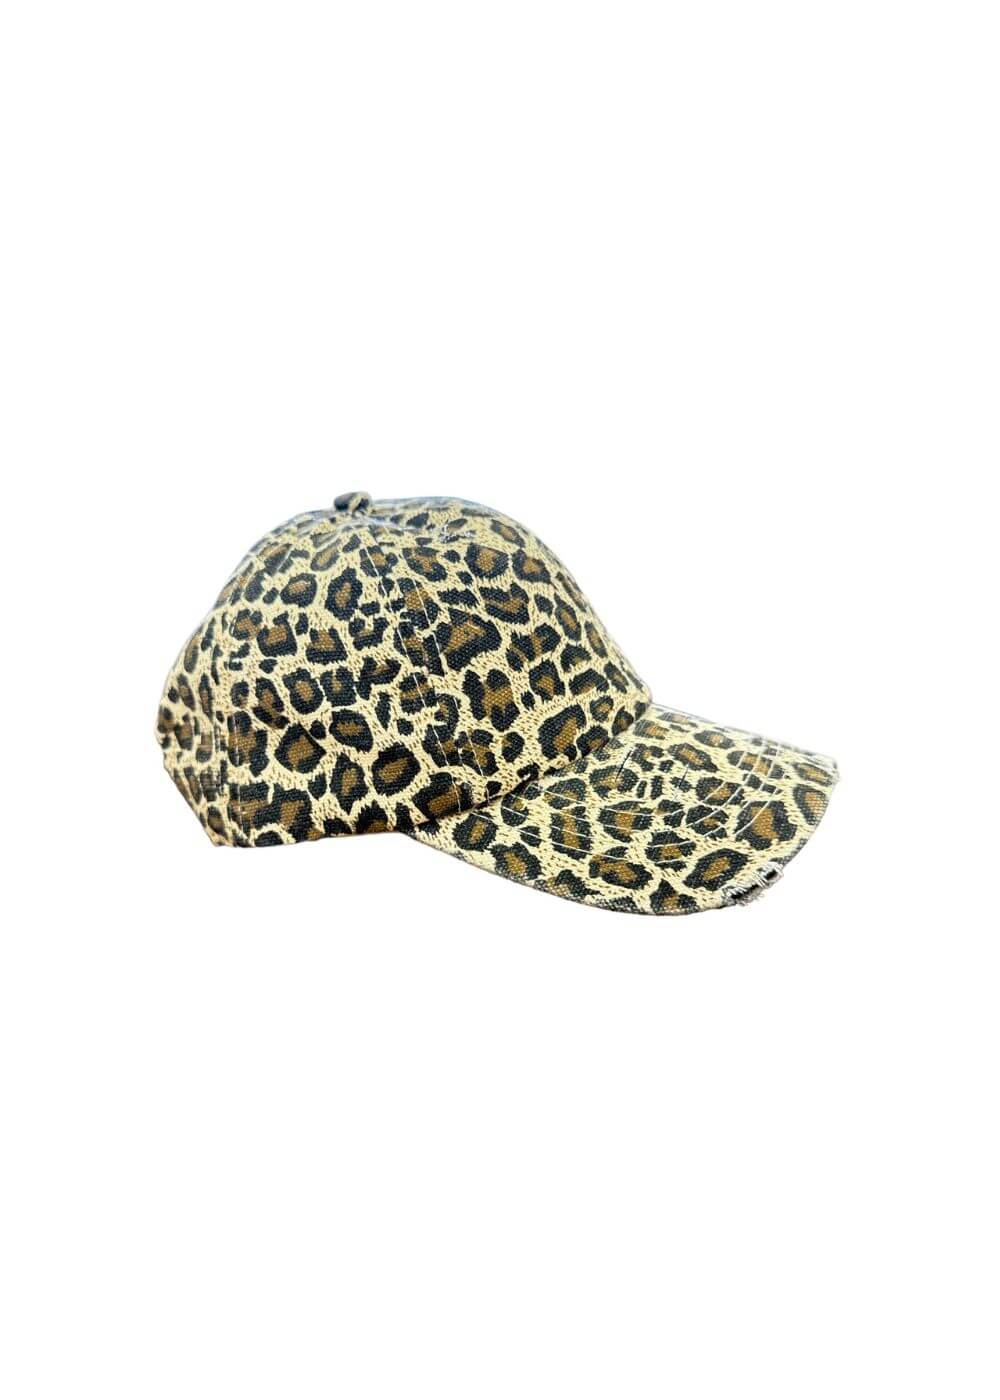 KERSO - Cappello Leopardato - VAR UNICA